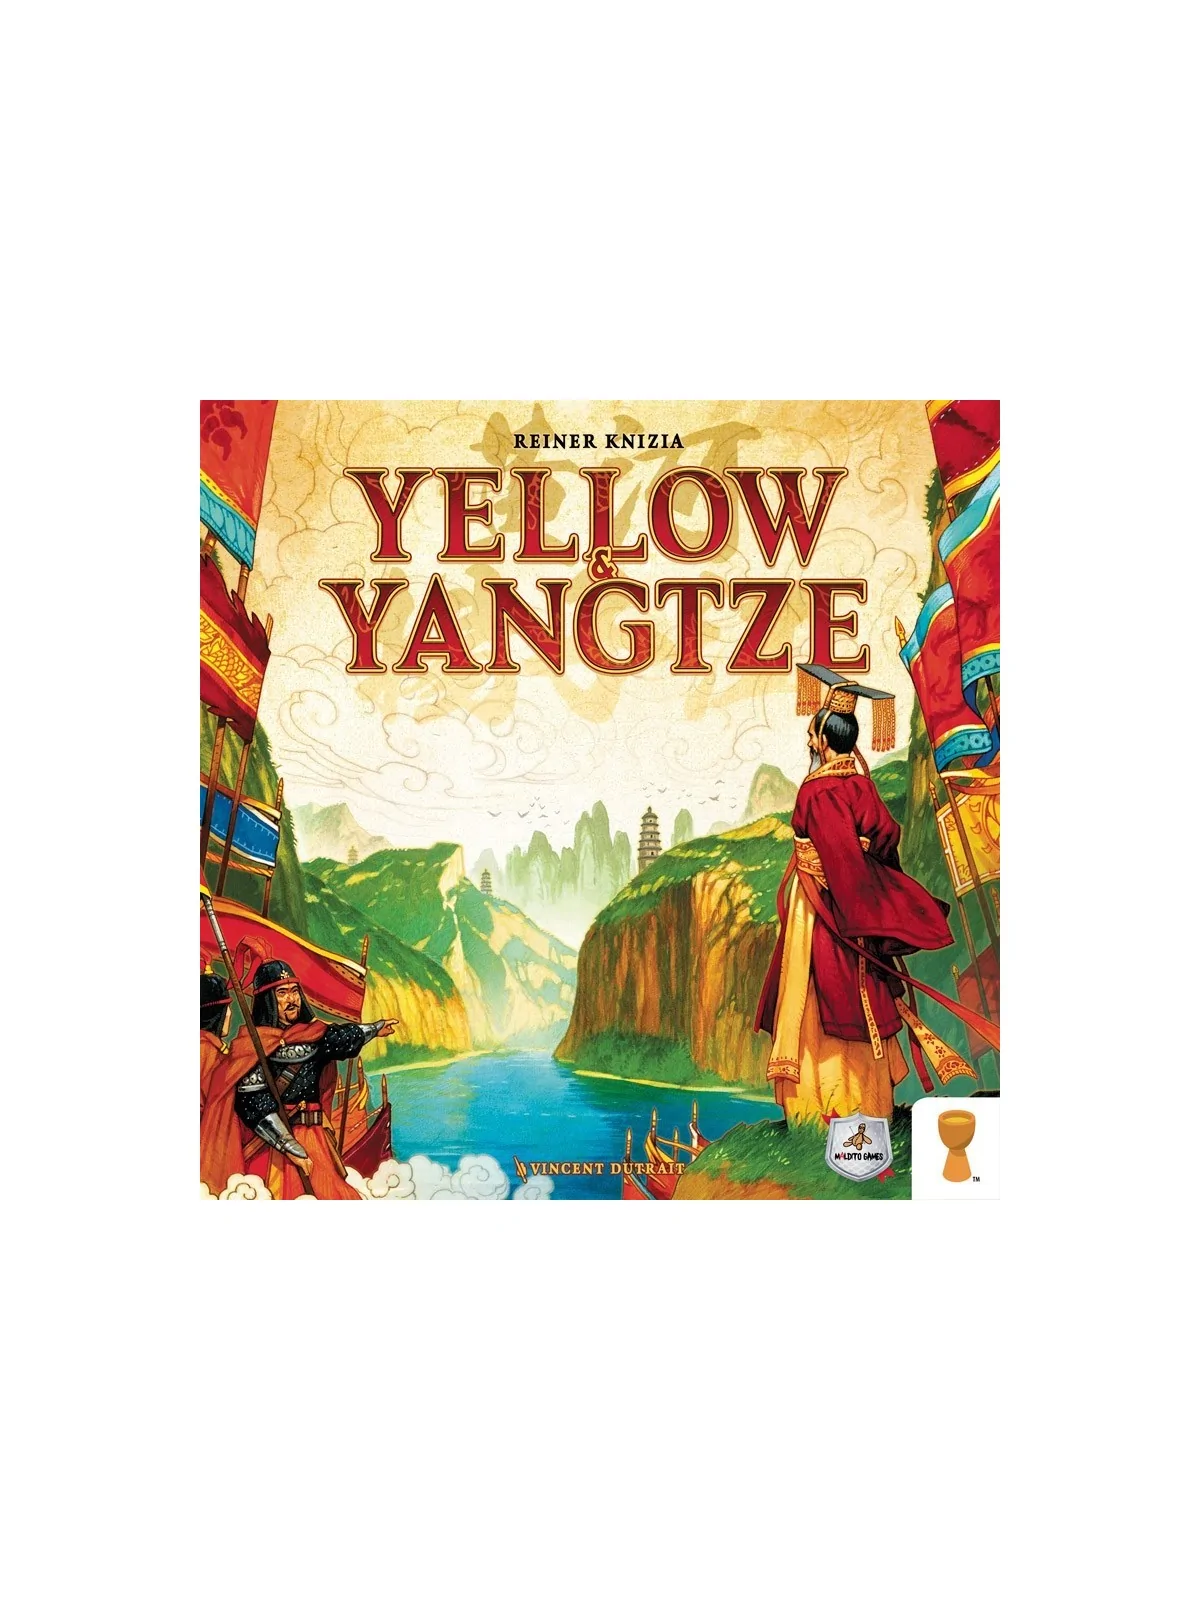 Comprar Yellow & Yangtze barato al mejor precio 40,50 € de Maldito Gam